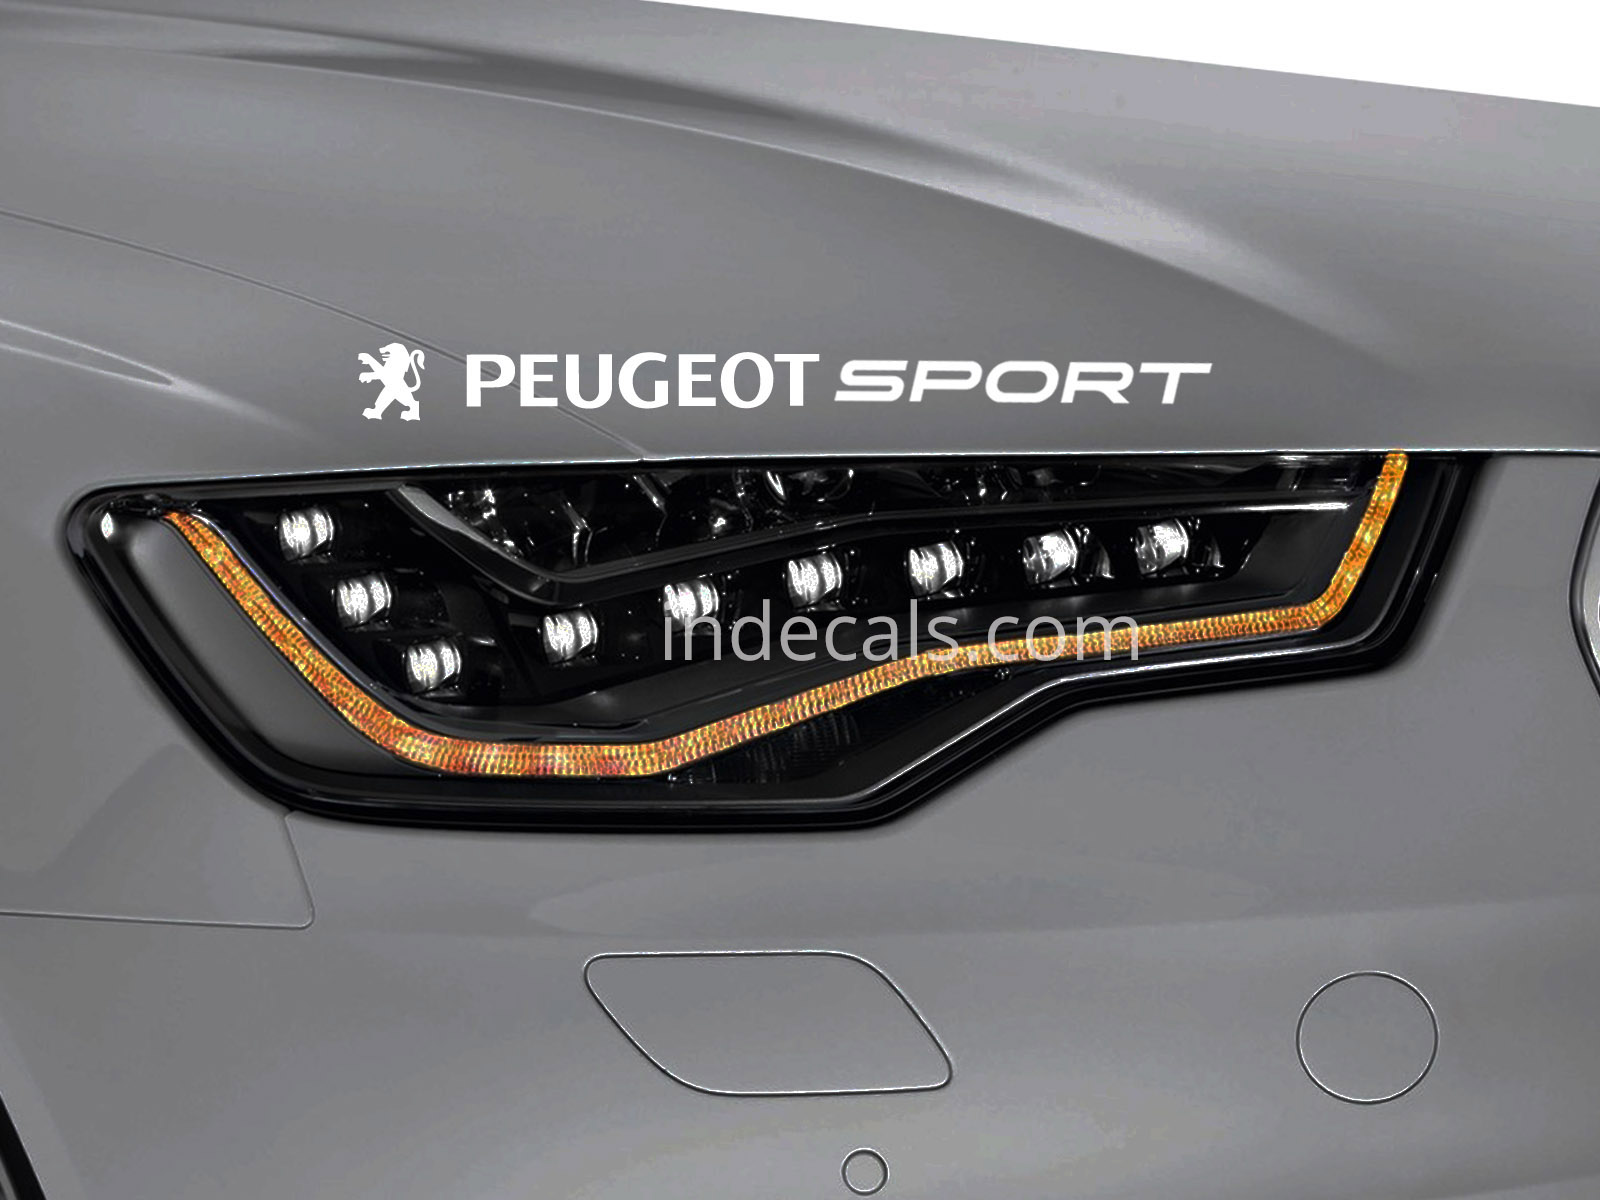 1 x Peugeot Sport Sticker for Eyebrow - White